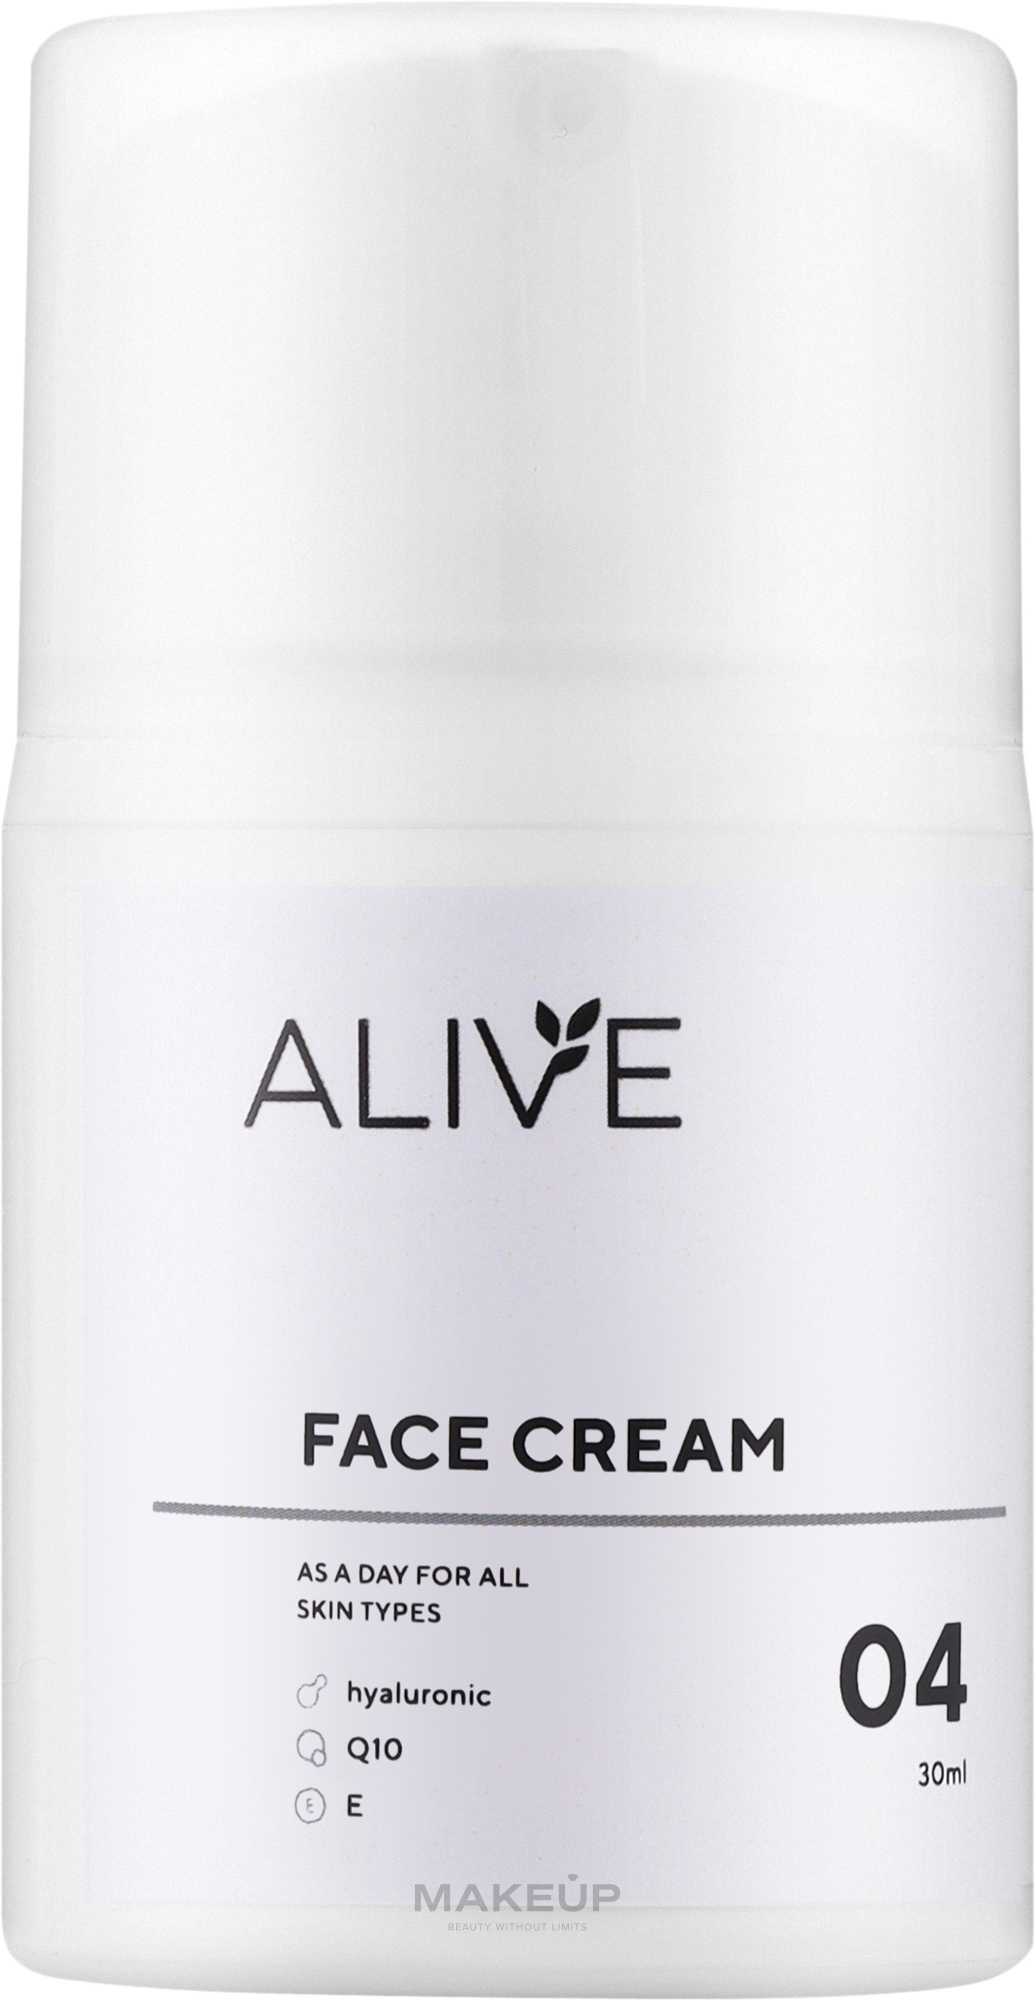 Крем для всех типов кожи для утреннего использования с антиооксидантом Q10 - ALIVE Cosmetics Face Cream 04 — фото 30ml